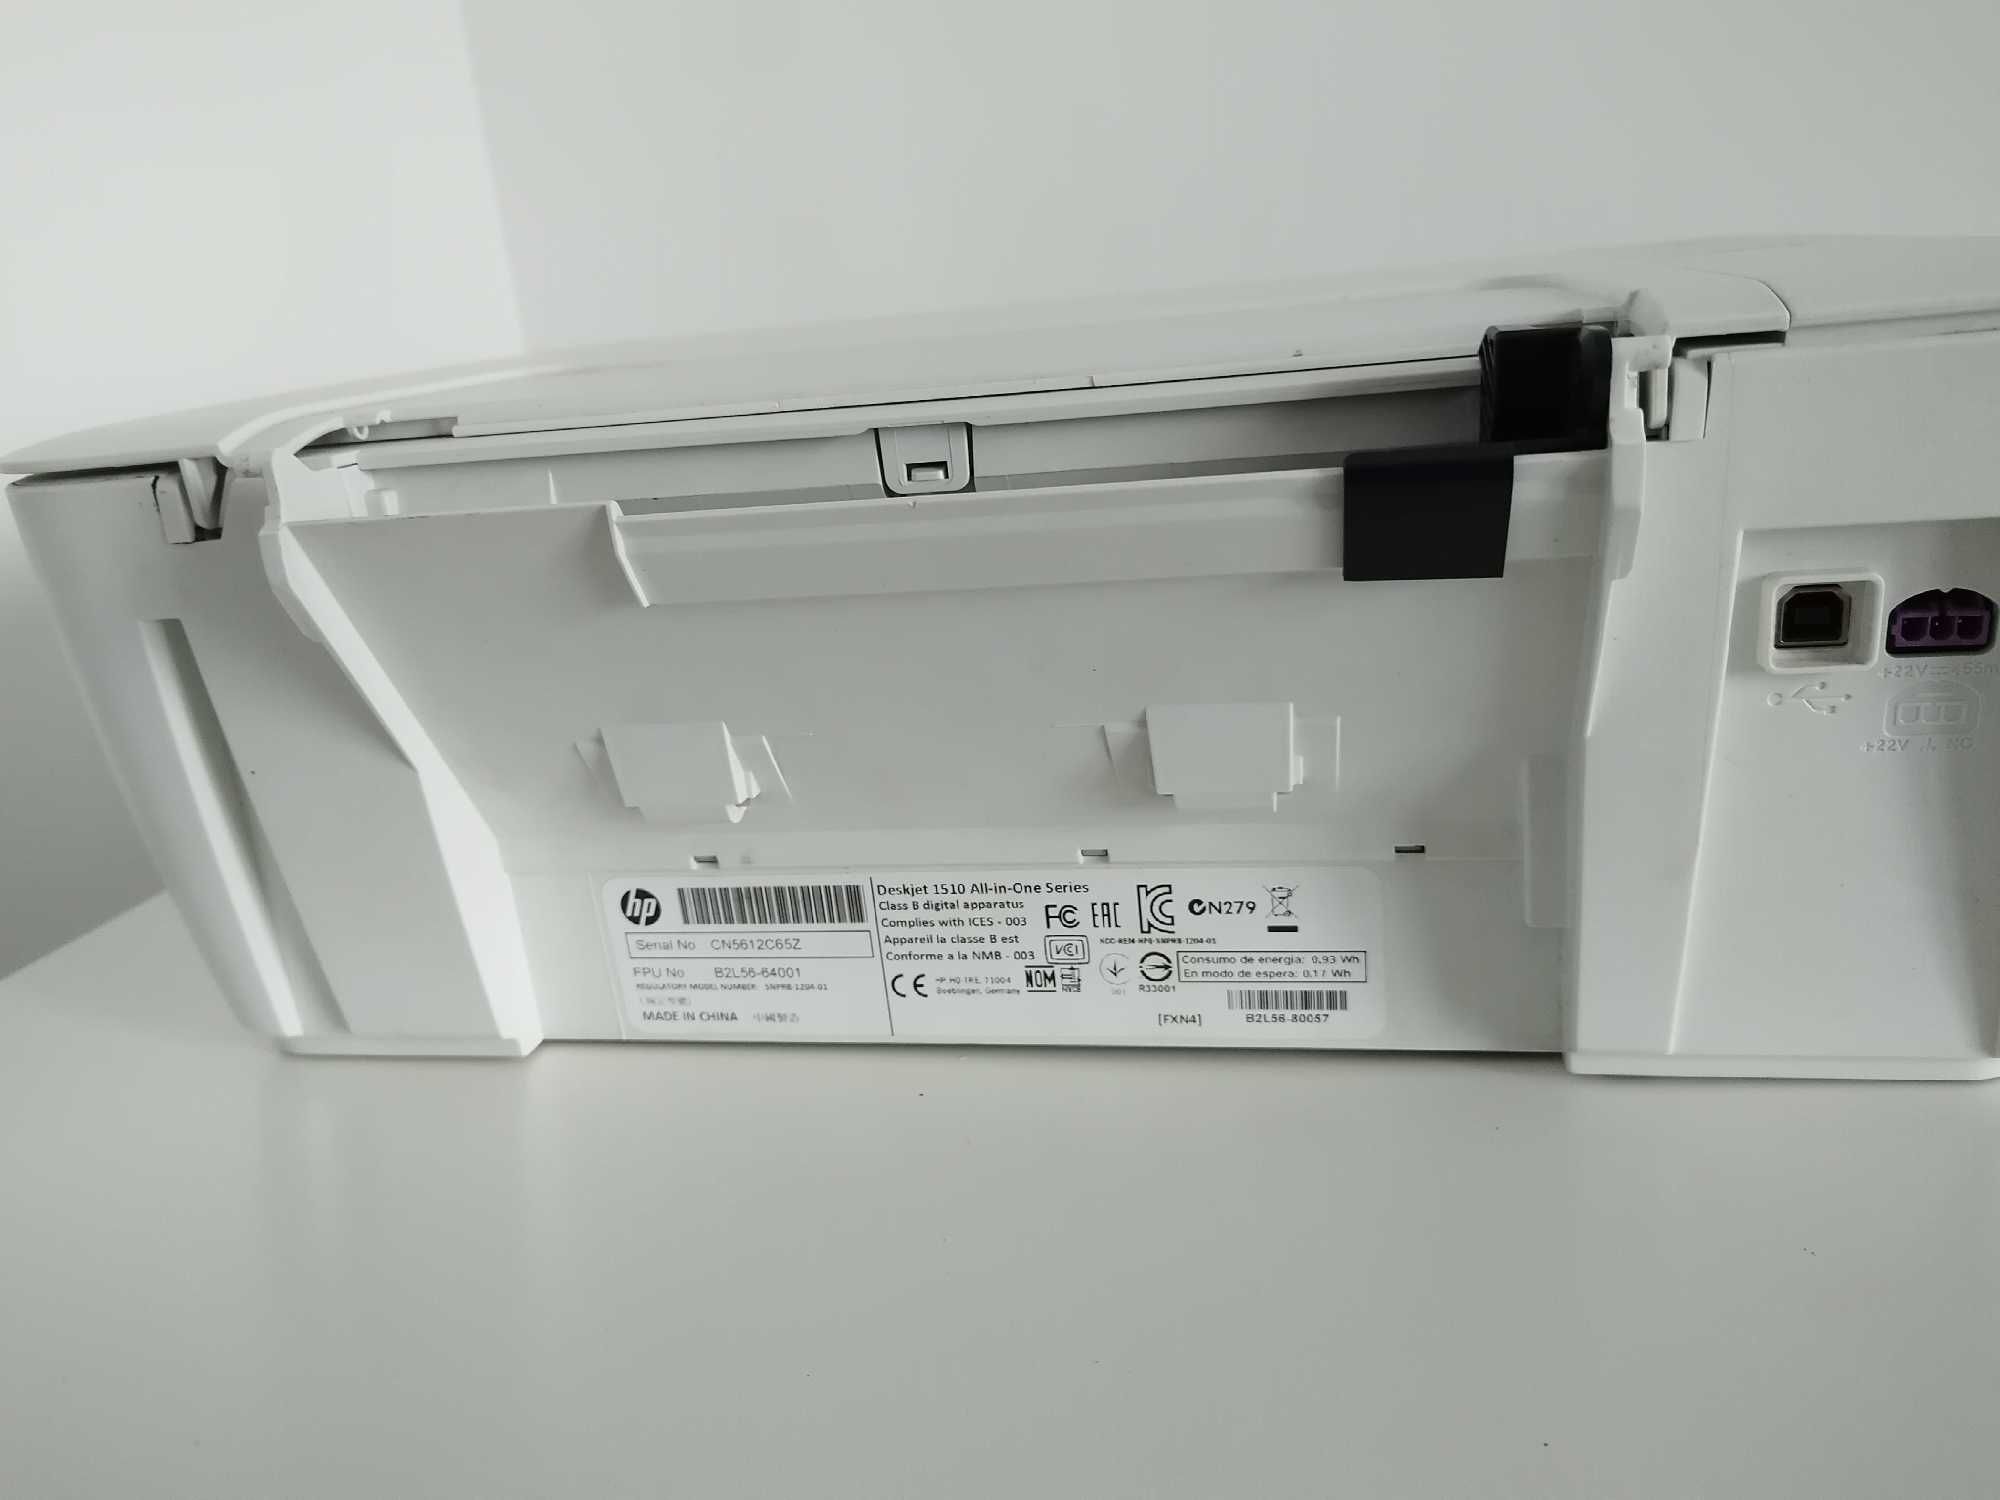 Imprimanta HP Deskjet 1510